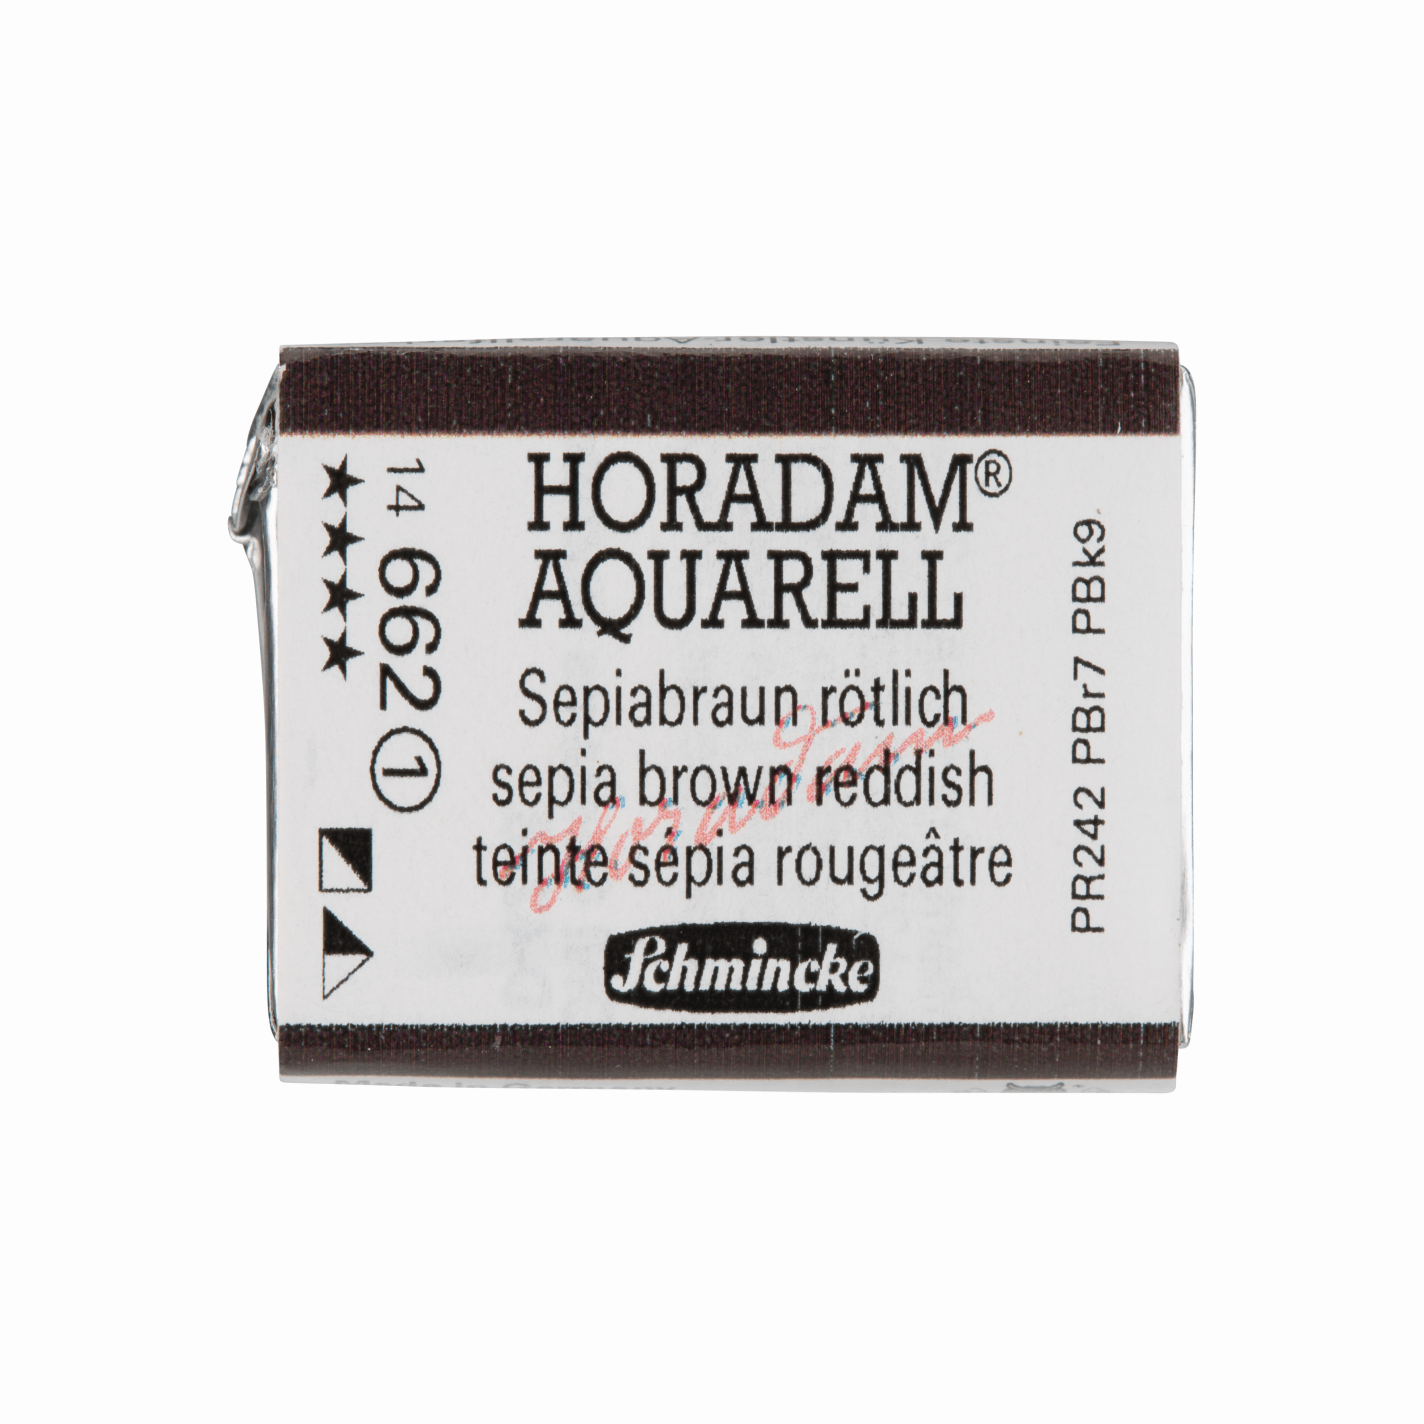 Schmincke Horadam Aquarell pans 1/1 pan Sepia Brown Reddish